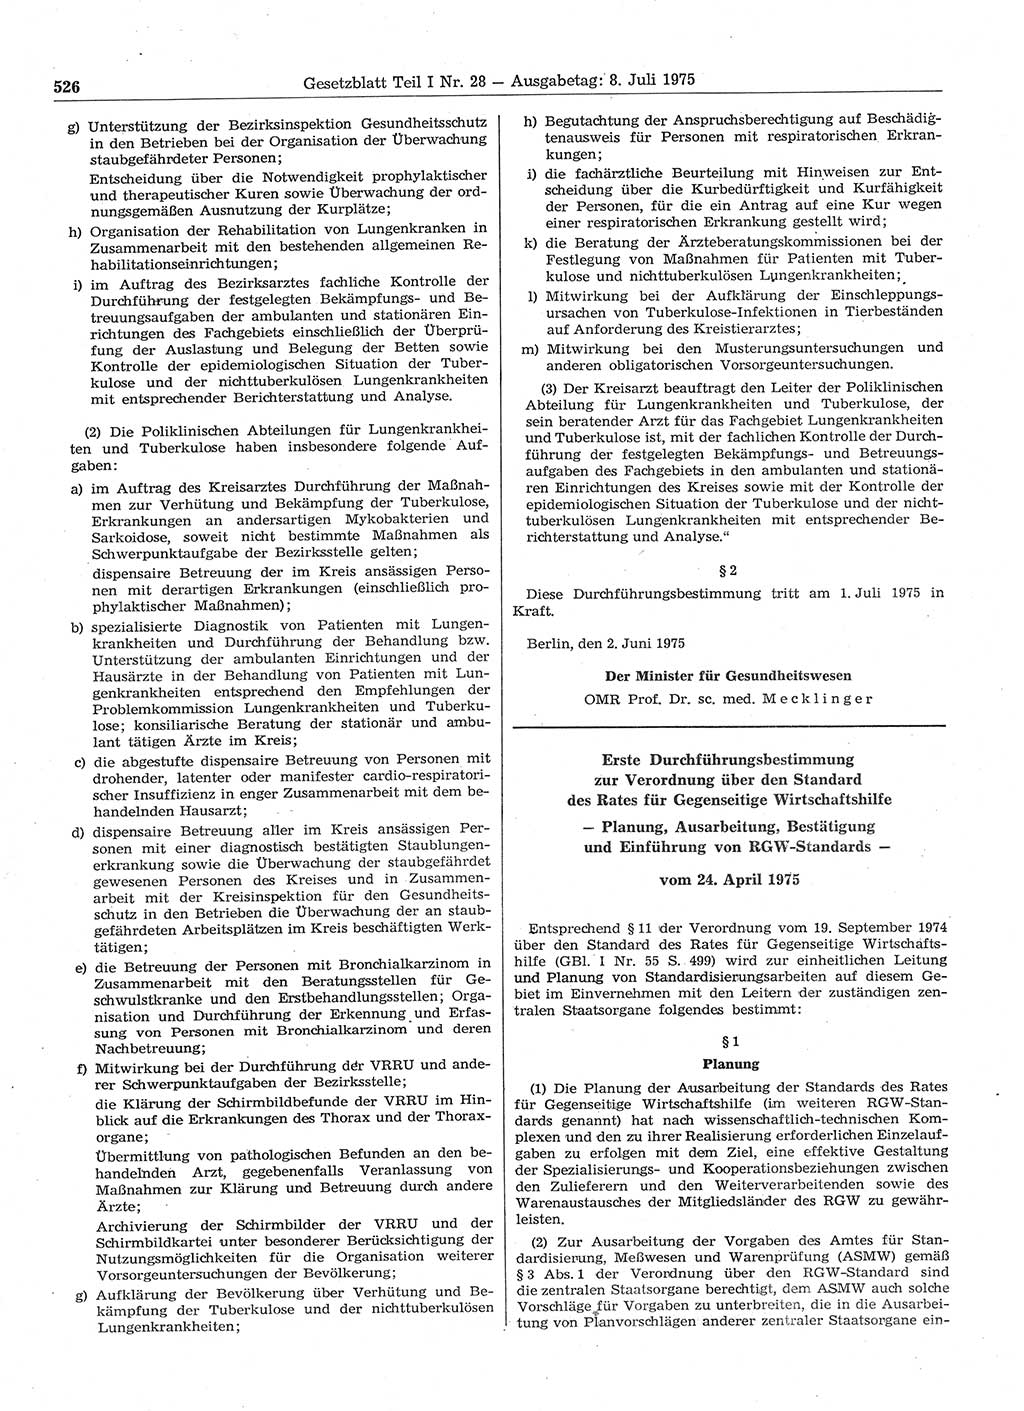 Gesetzblatt (GBl.) der Deutschen Demokratischen Republik (DDR) Teil Ⅰ 1975, Seite 526 (GBl. DDR Ⅰ 1975, S. 526)